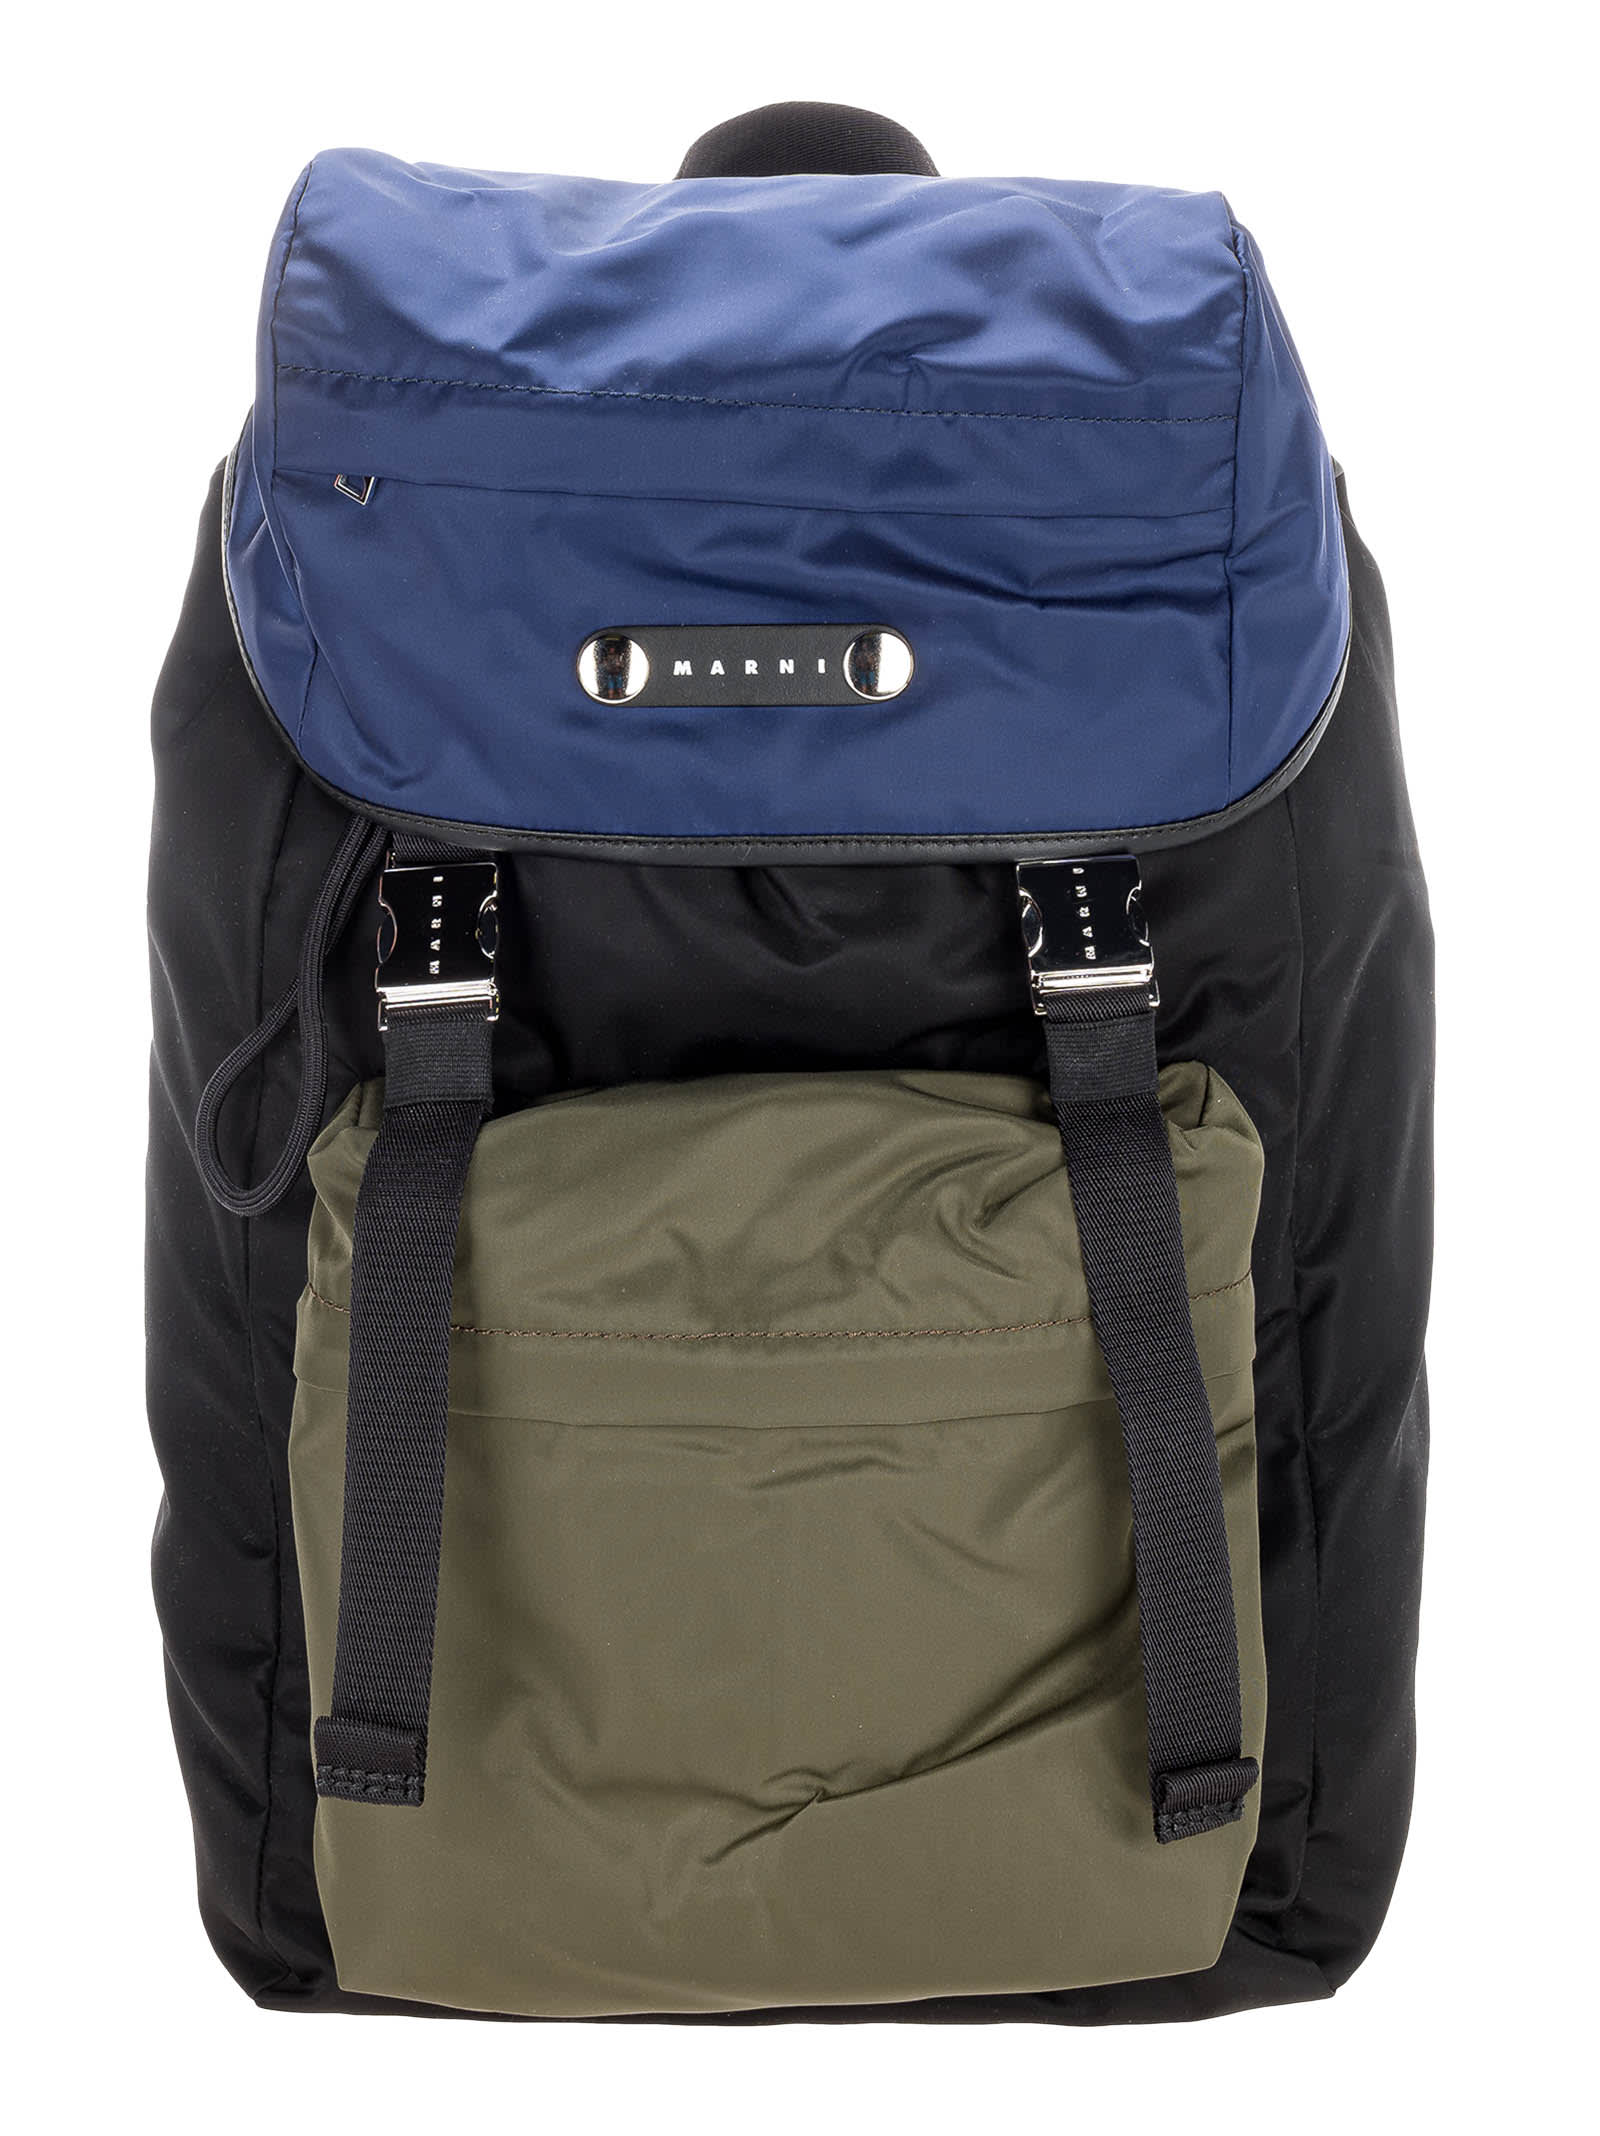 Marni Hackney Backpack